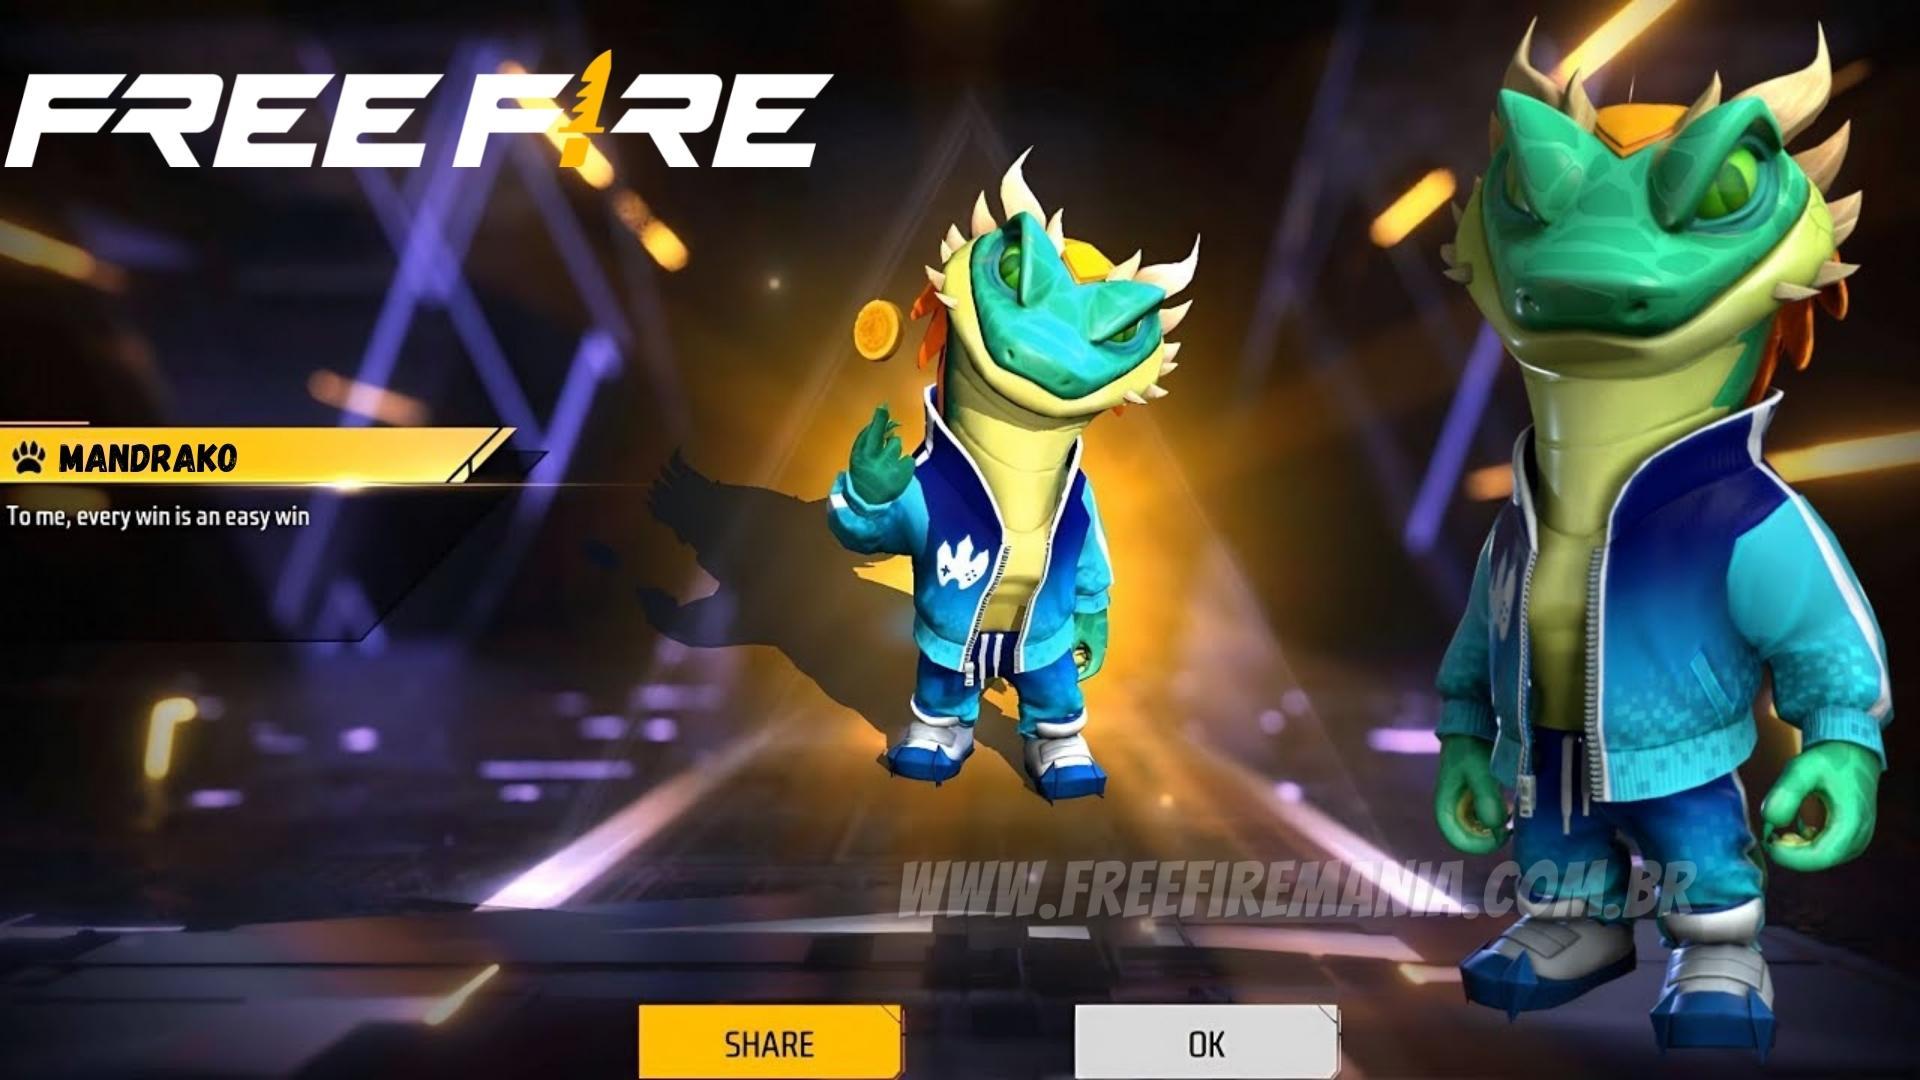 Free Fire traz novo pet em servidor avançado, free fire